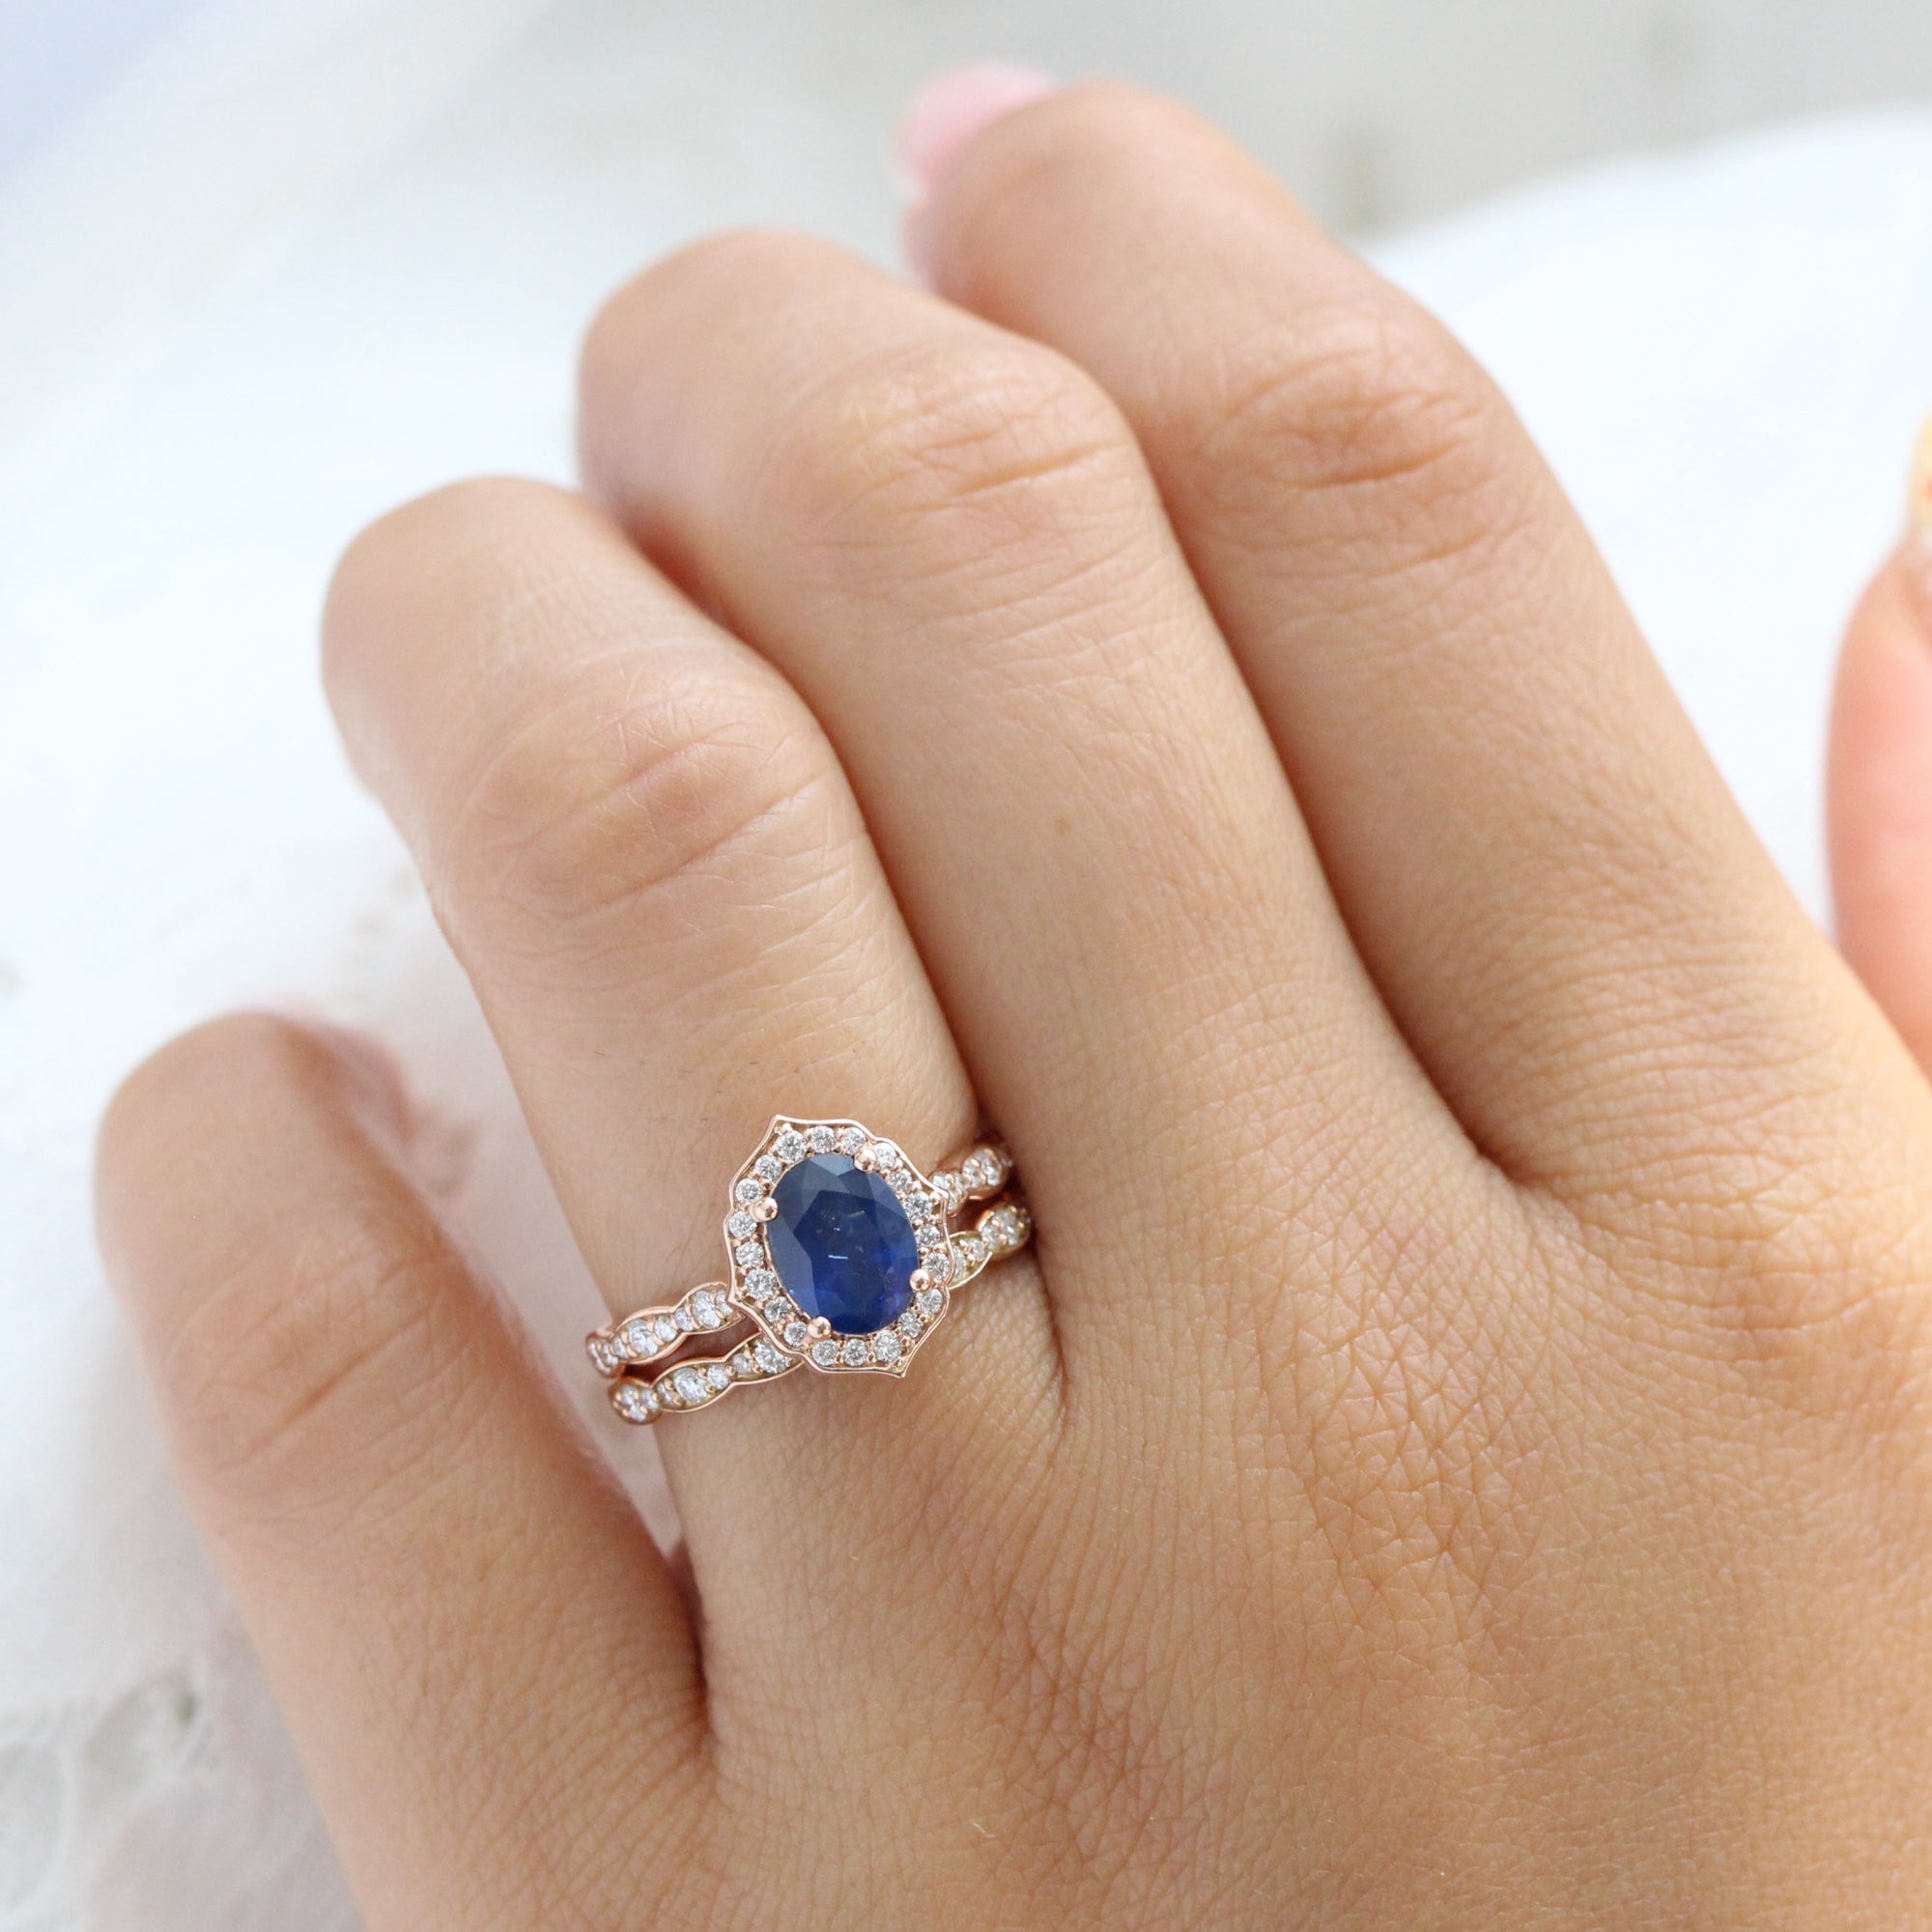 Oval cut Aqua Sapphire Halo Diamond Ring Set by La More Design in